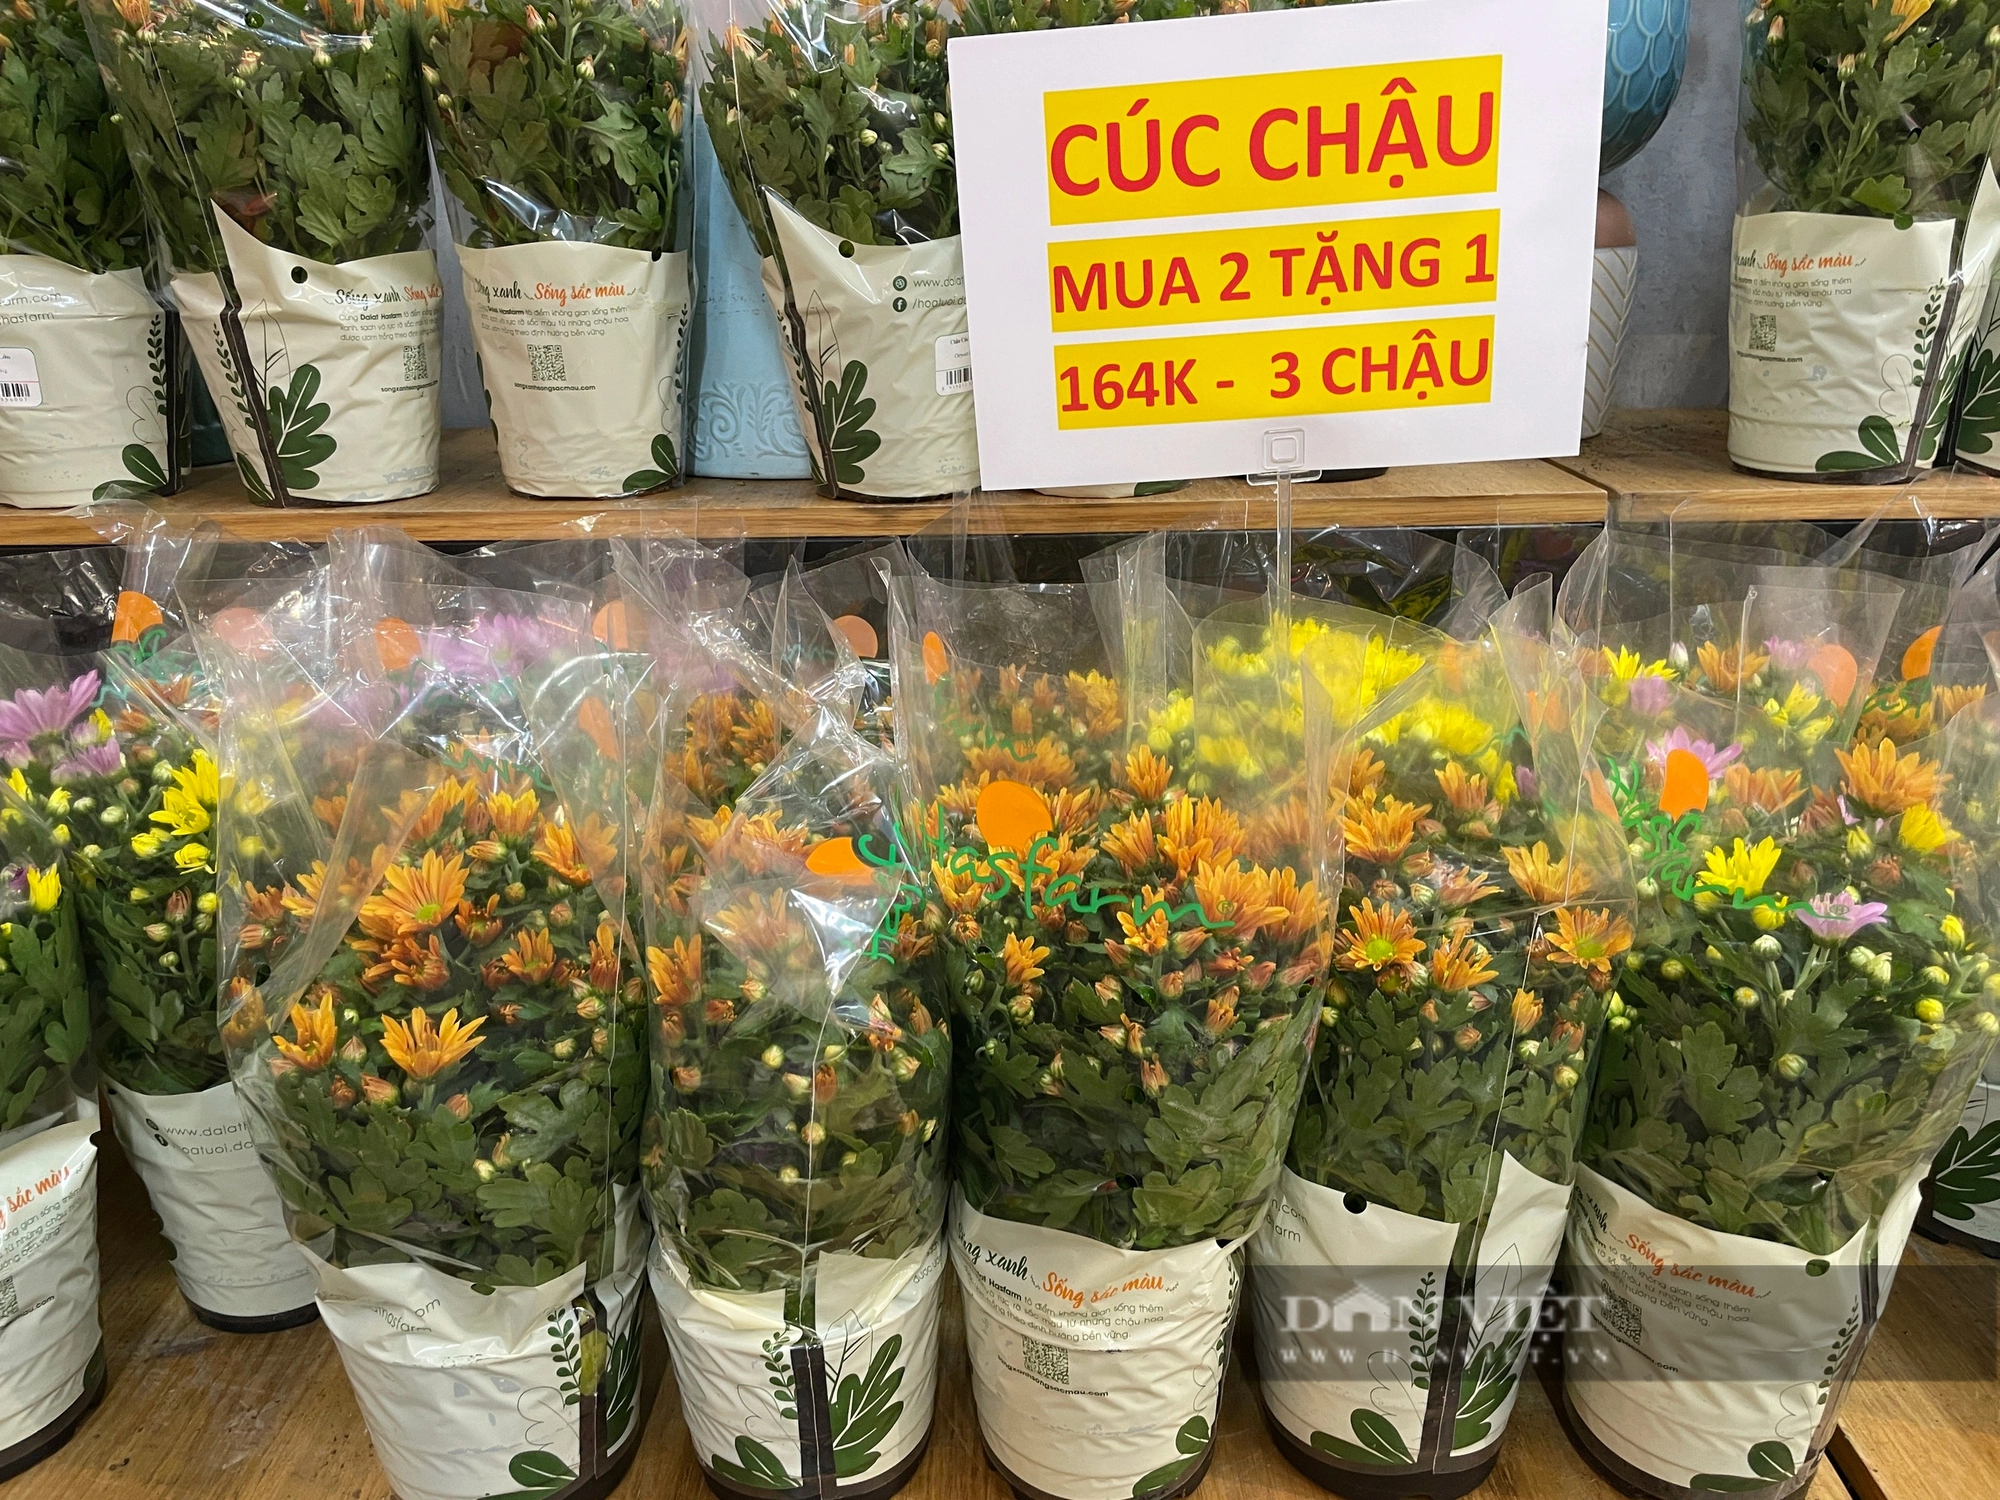 Chợ 30 Tết Sài Gòn: Khách gom hàng giảm giá, shop hoa nổi tiếng cũng đại hạ giá mua 1 tặng 1- Ảnh 4.